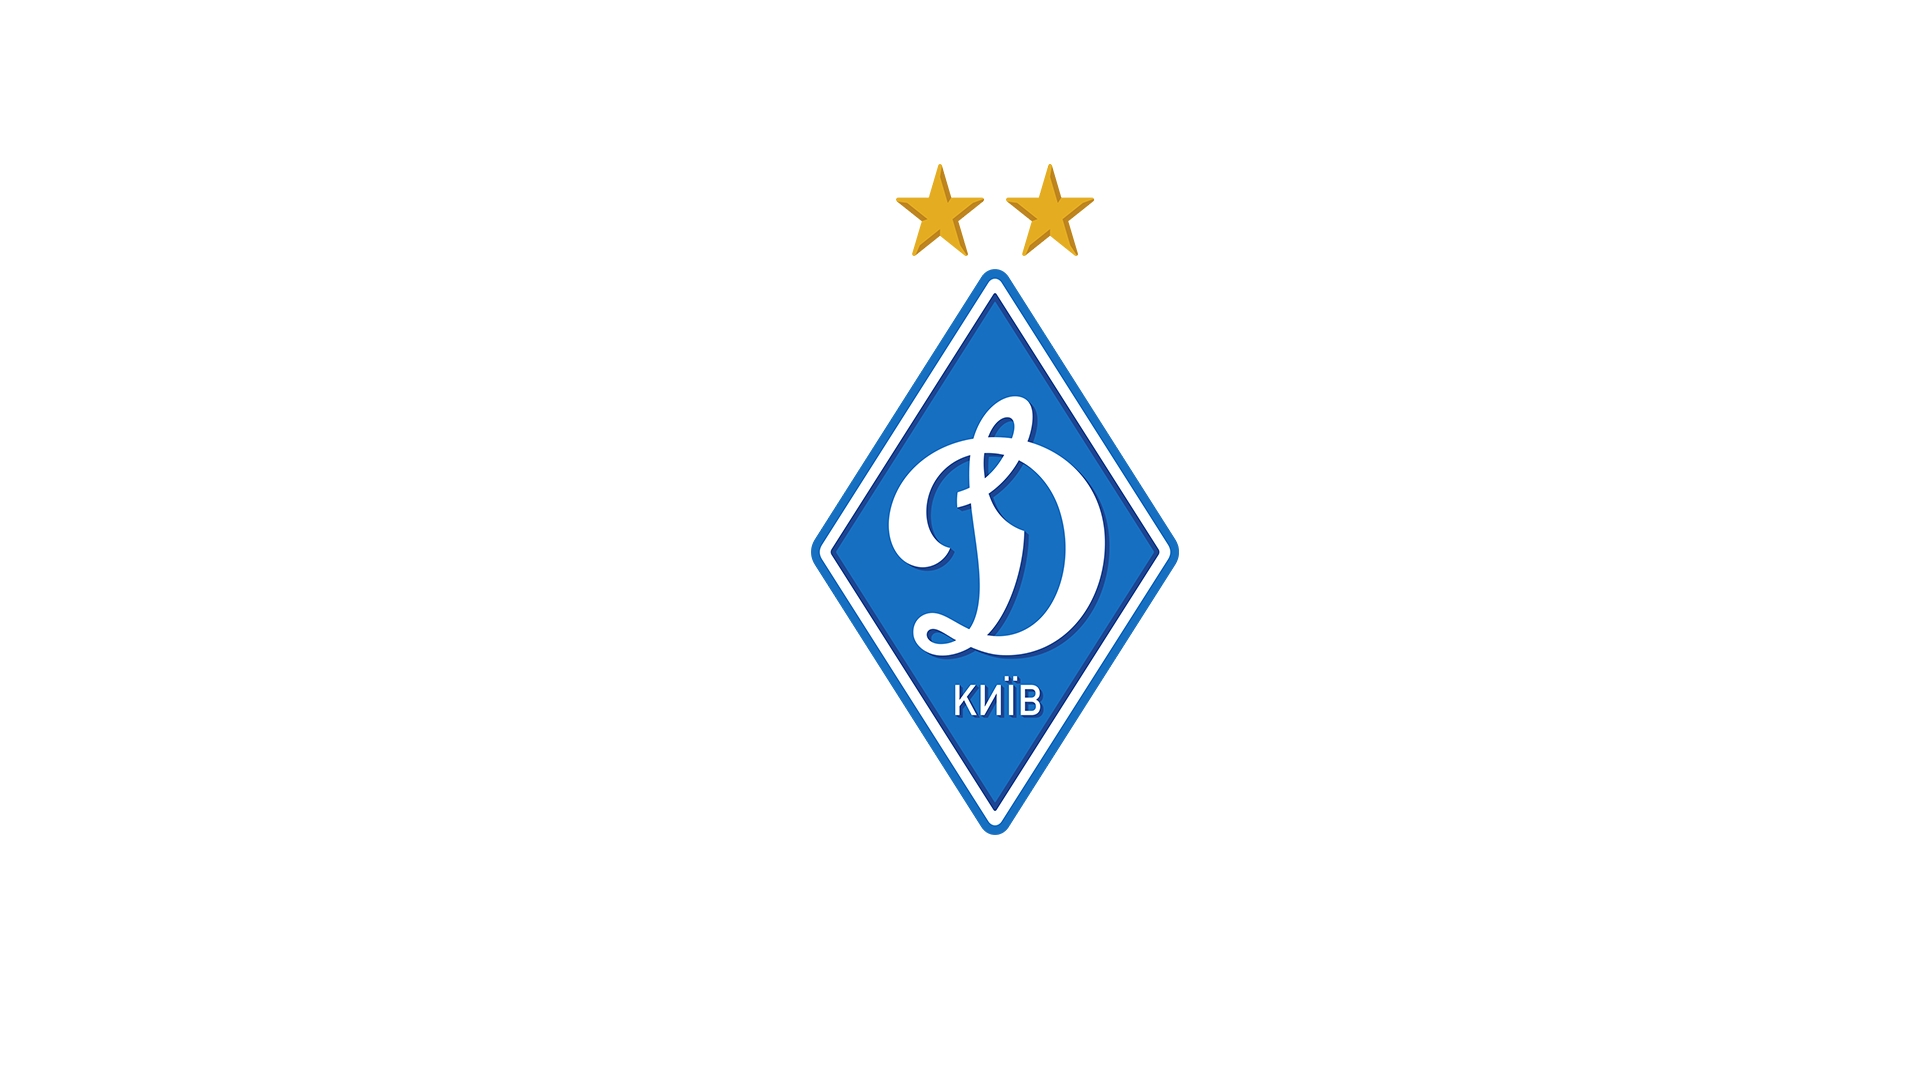 乌克兰球队基辅迪纳摩，带有“军事组织”之意，苏联解体后，该名称依然沿用